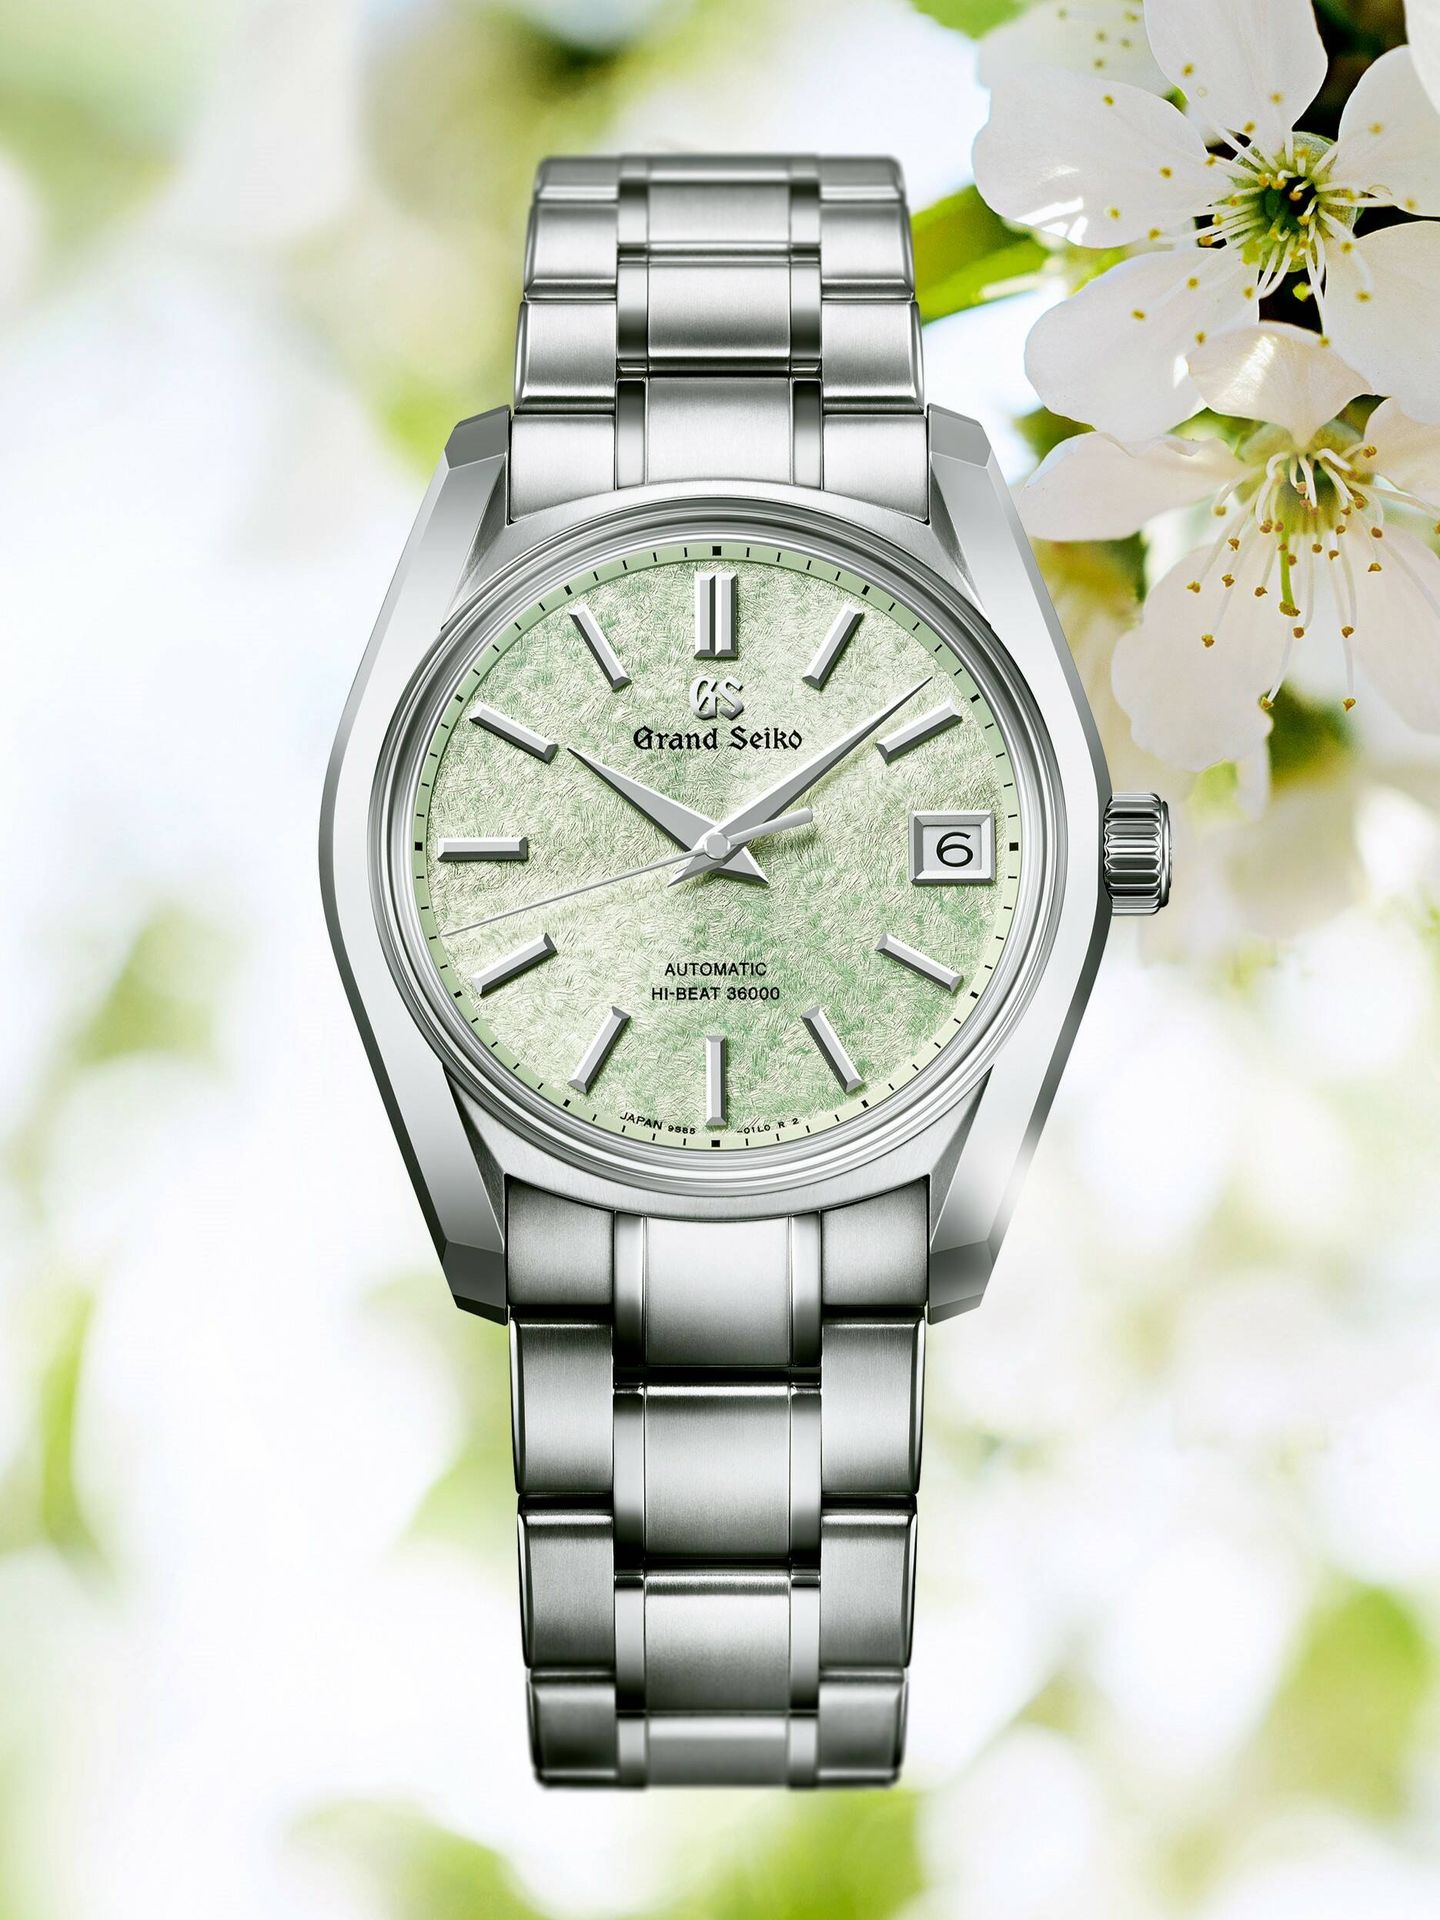 El modelo SBGH343 está revestido de tonos verde plateado inspirado en las flores de cerezo y las hojas tiernas. (Cortesía)